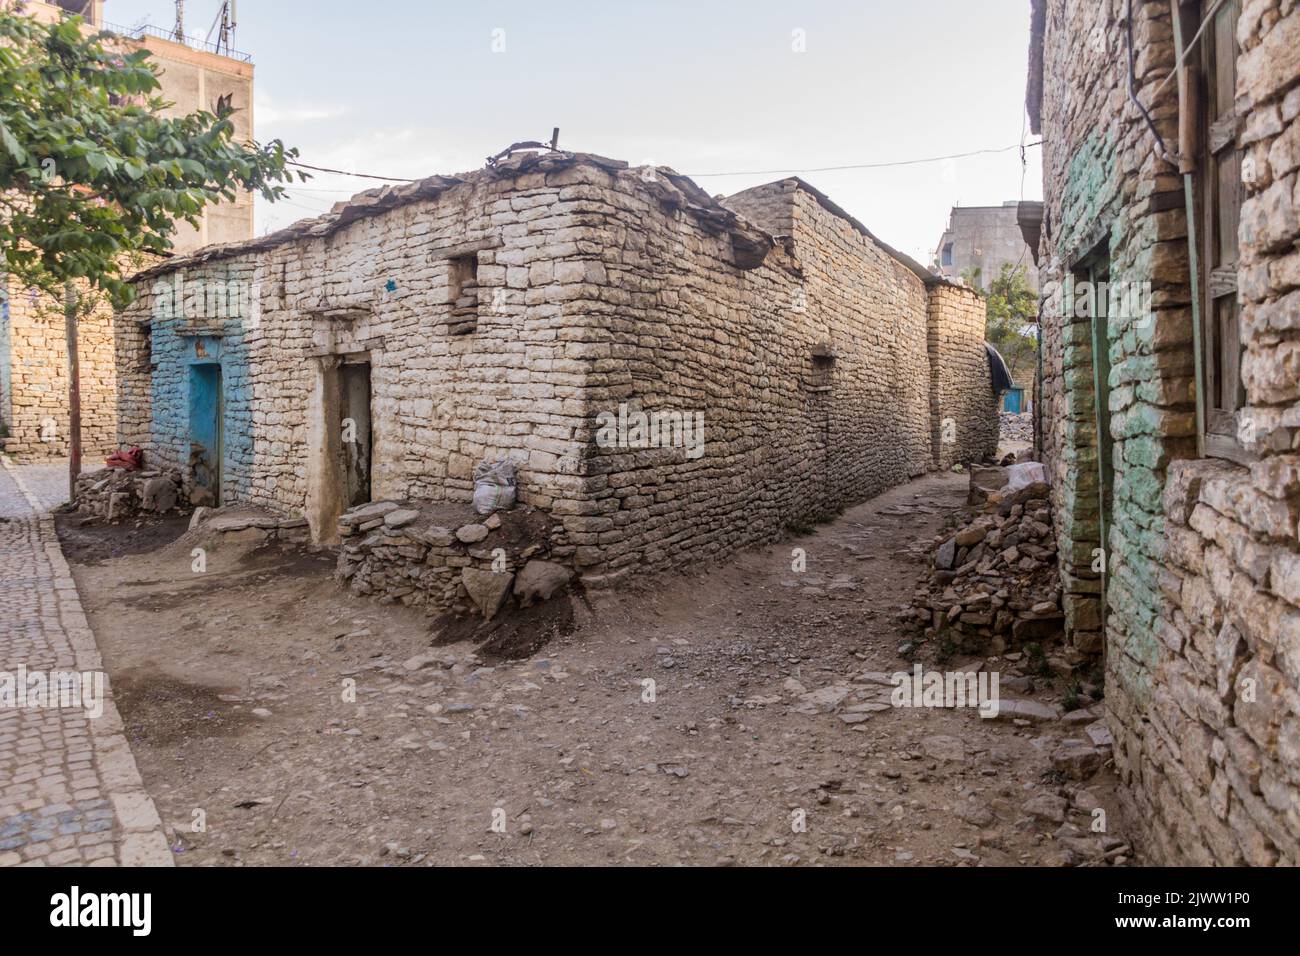 Stone houses in Mekele, Ethiopia Stock Photo